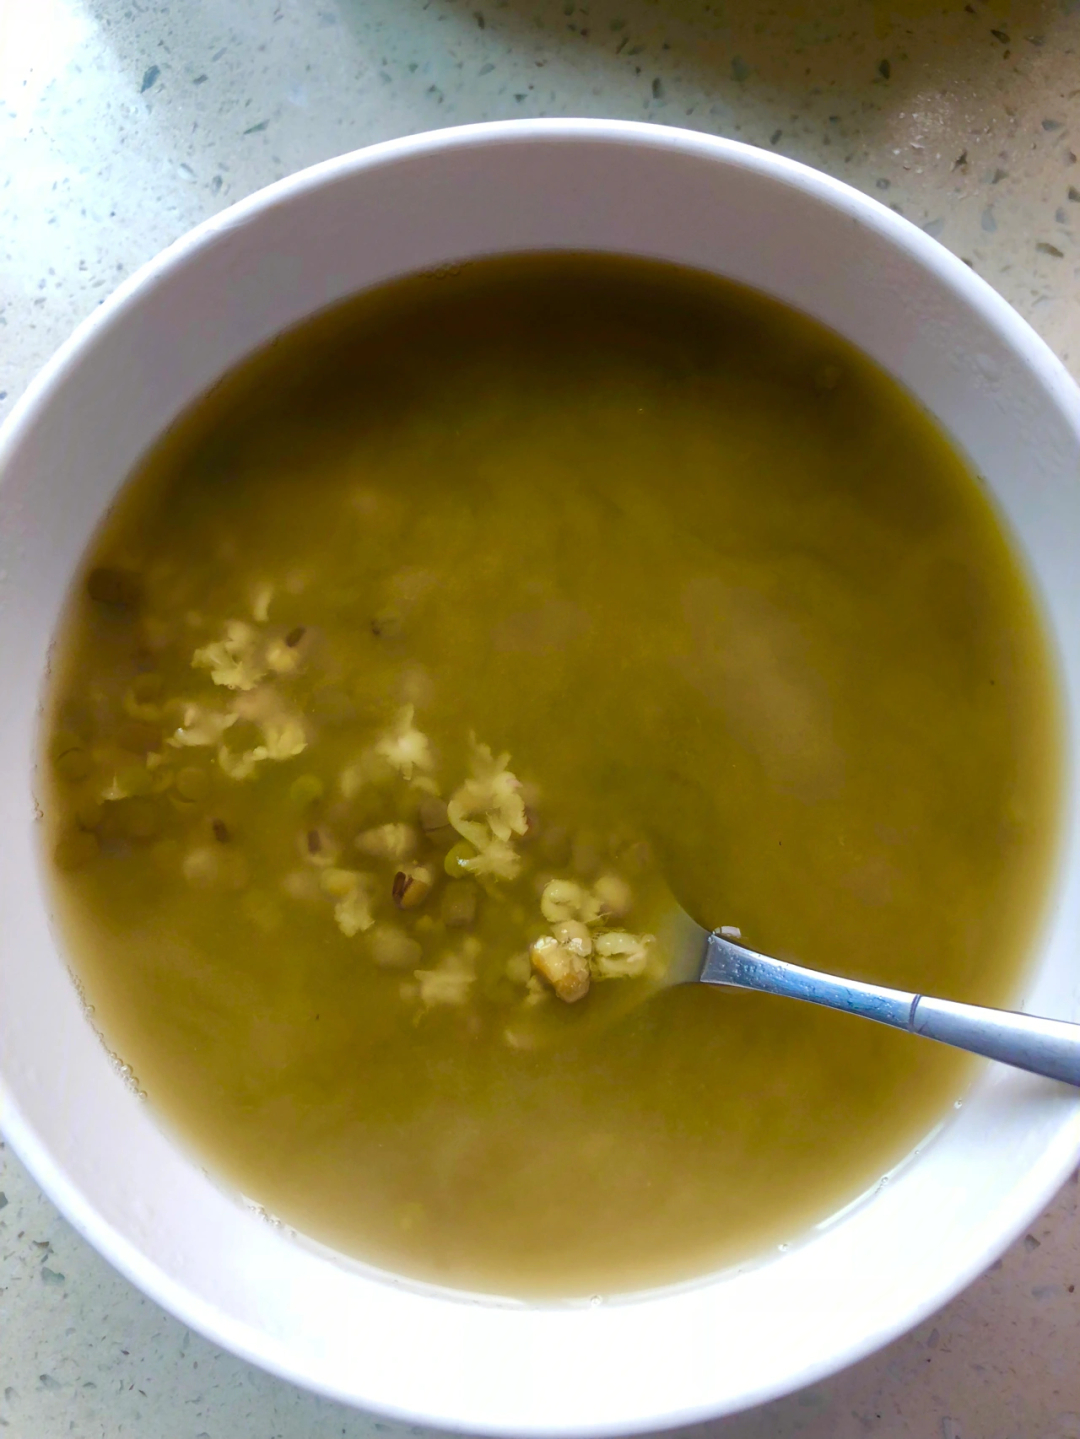 我也会煮又绿又浓稠的绿豆汤啦加蜂蜜78